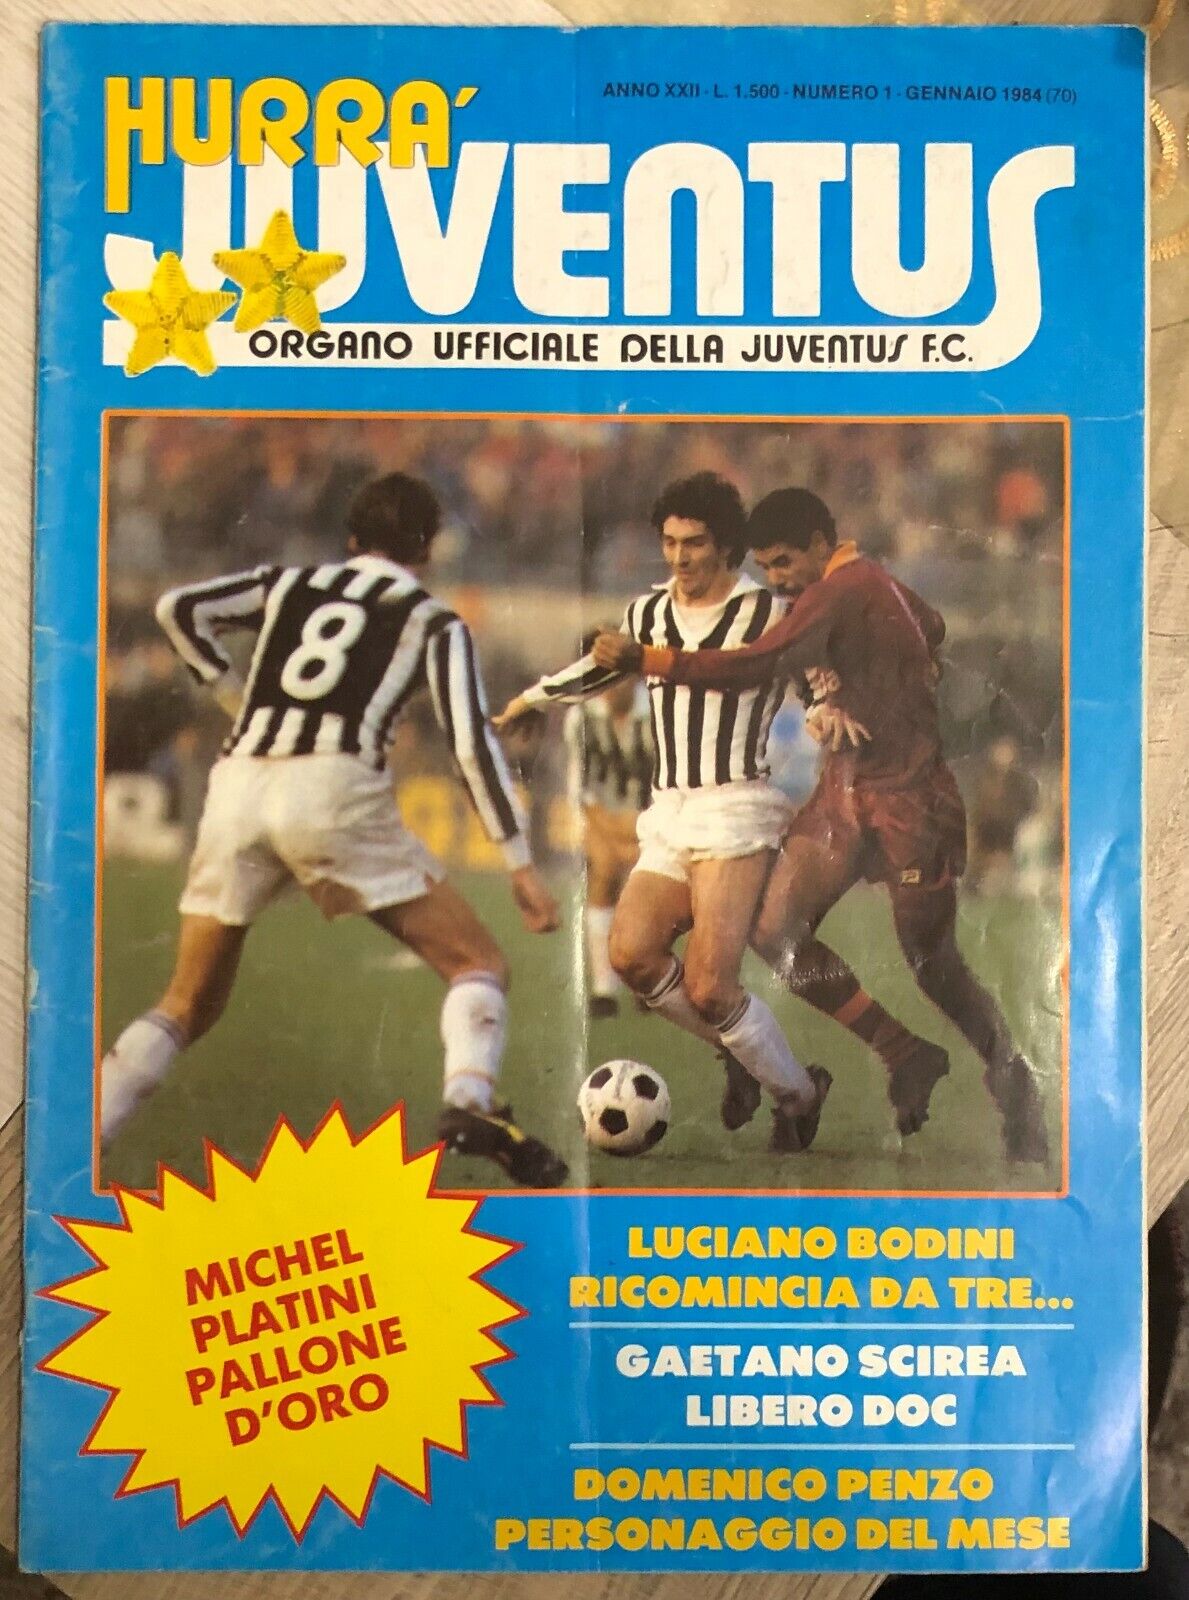 Hurr? Juventus n. 1/1984 di Aa.vv.,  1984,  Juventus F.c.